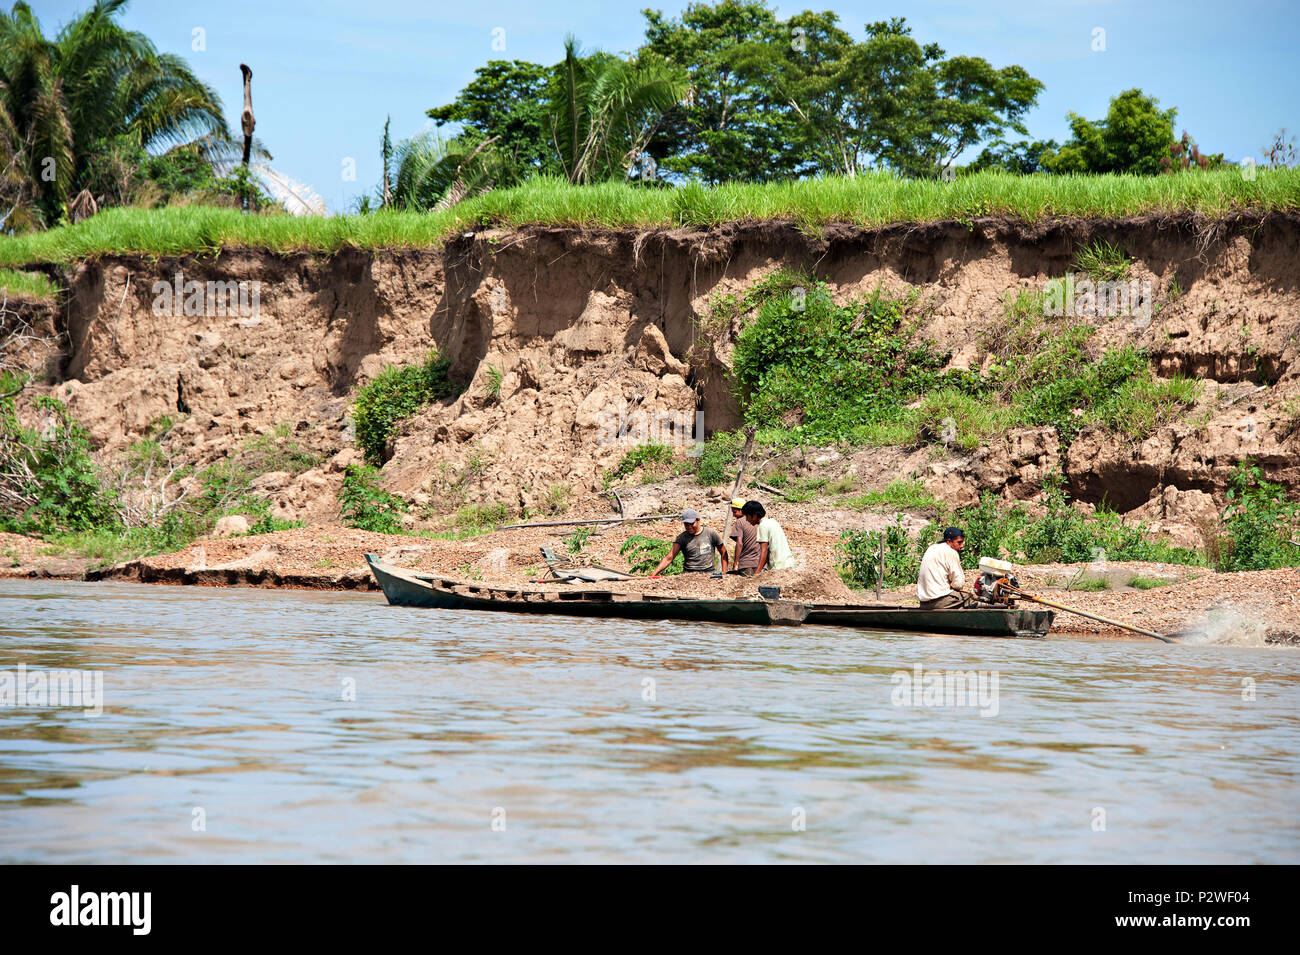 Los aldeanos de trabajo viajar a lo largo del río Amazonas en barcos largos y estrechos botes que ofrecen el transporte rápido entre las aldeas. Foto de stock